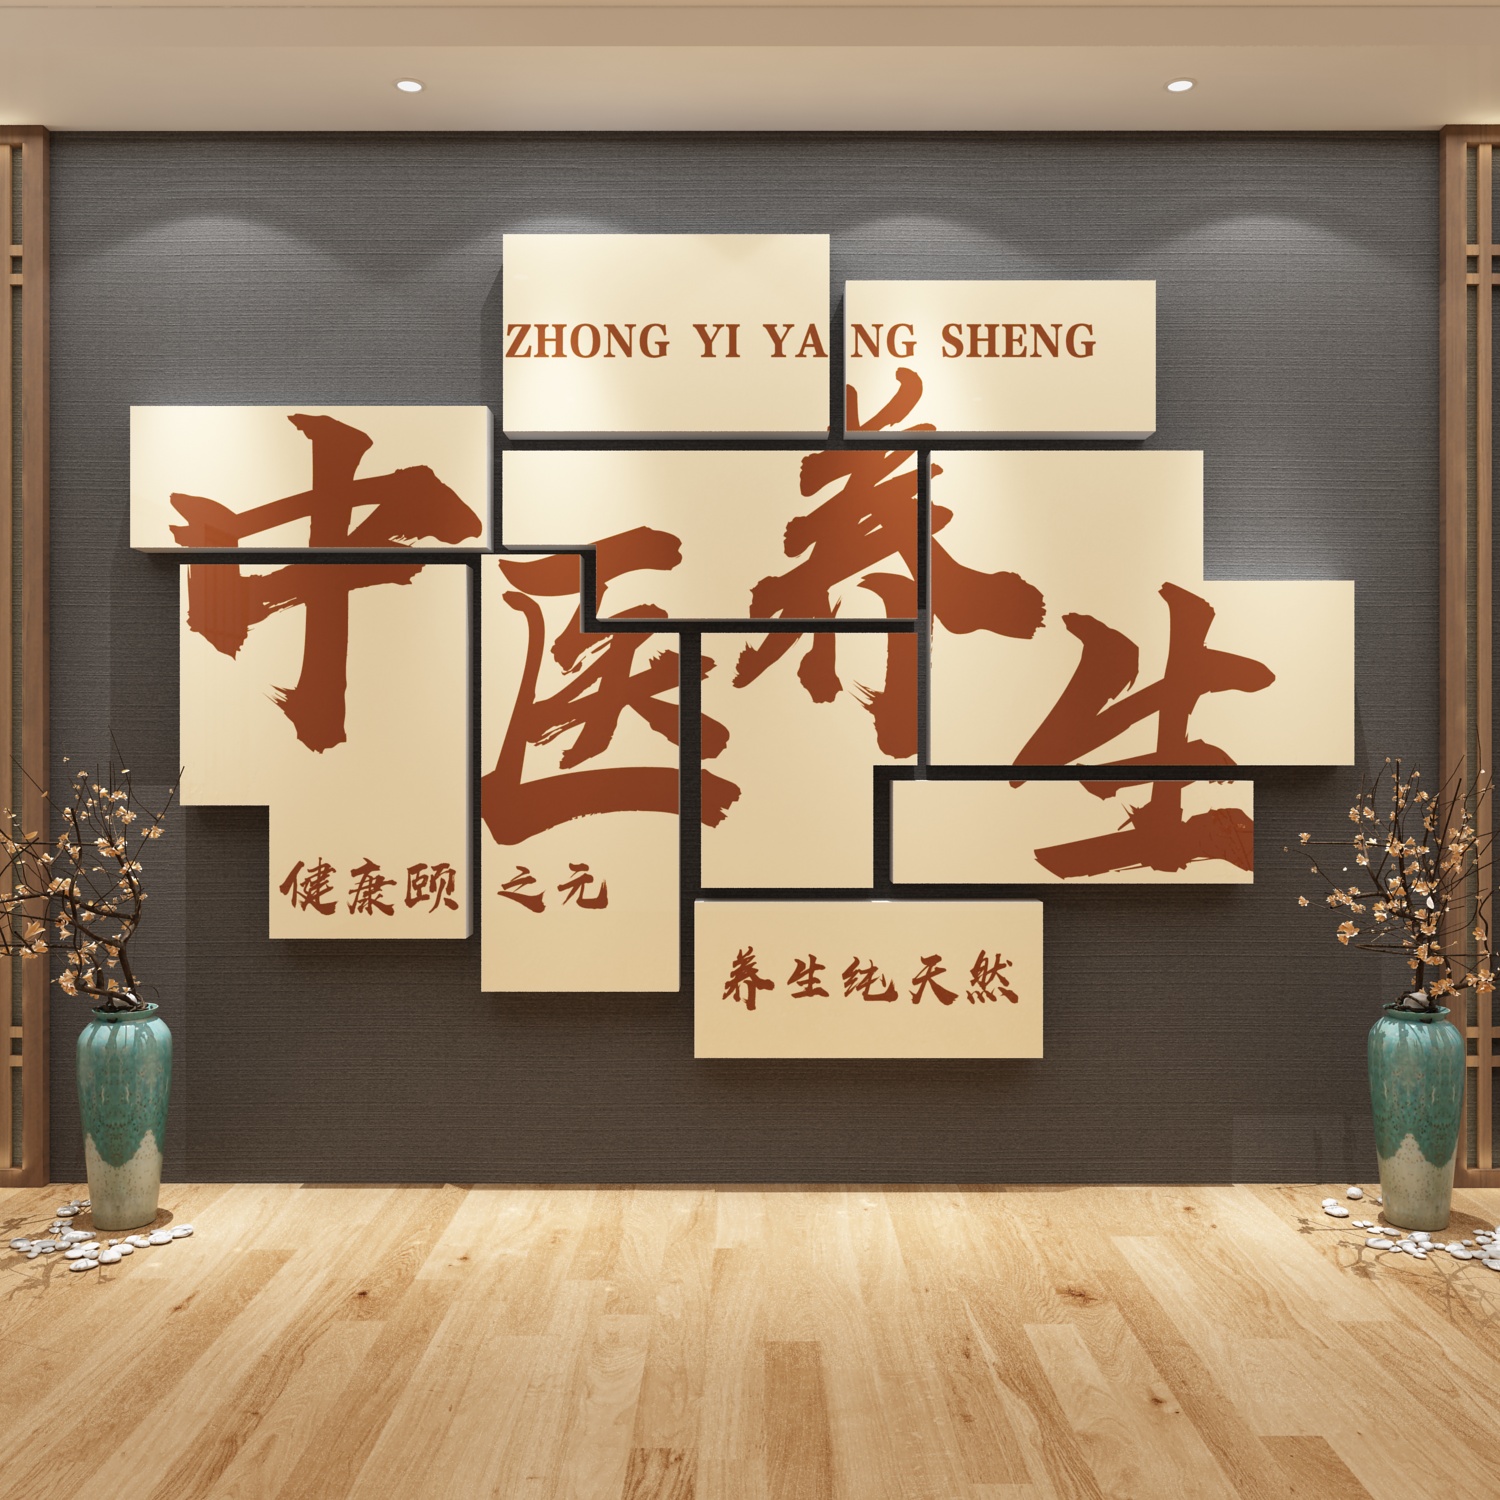 中医文化针艾灸网红养生馆背景墙面装修饰设计美容院形象贴纸挂画